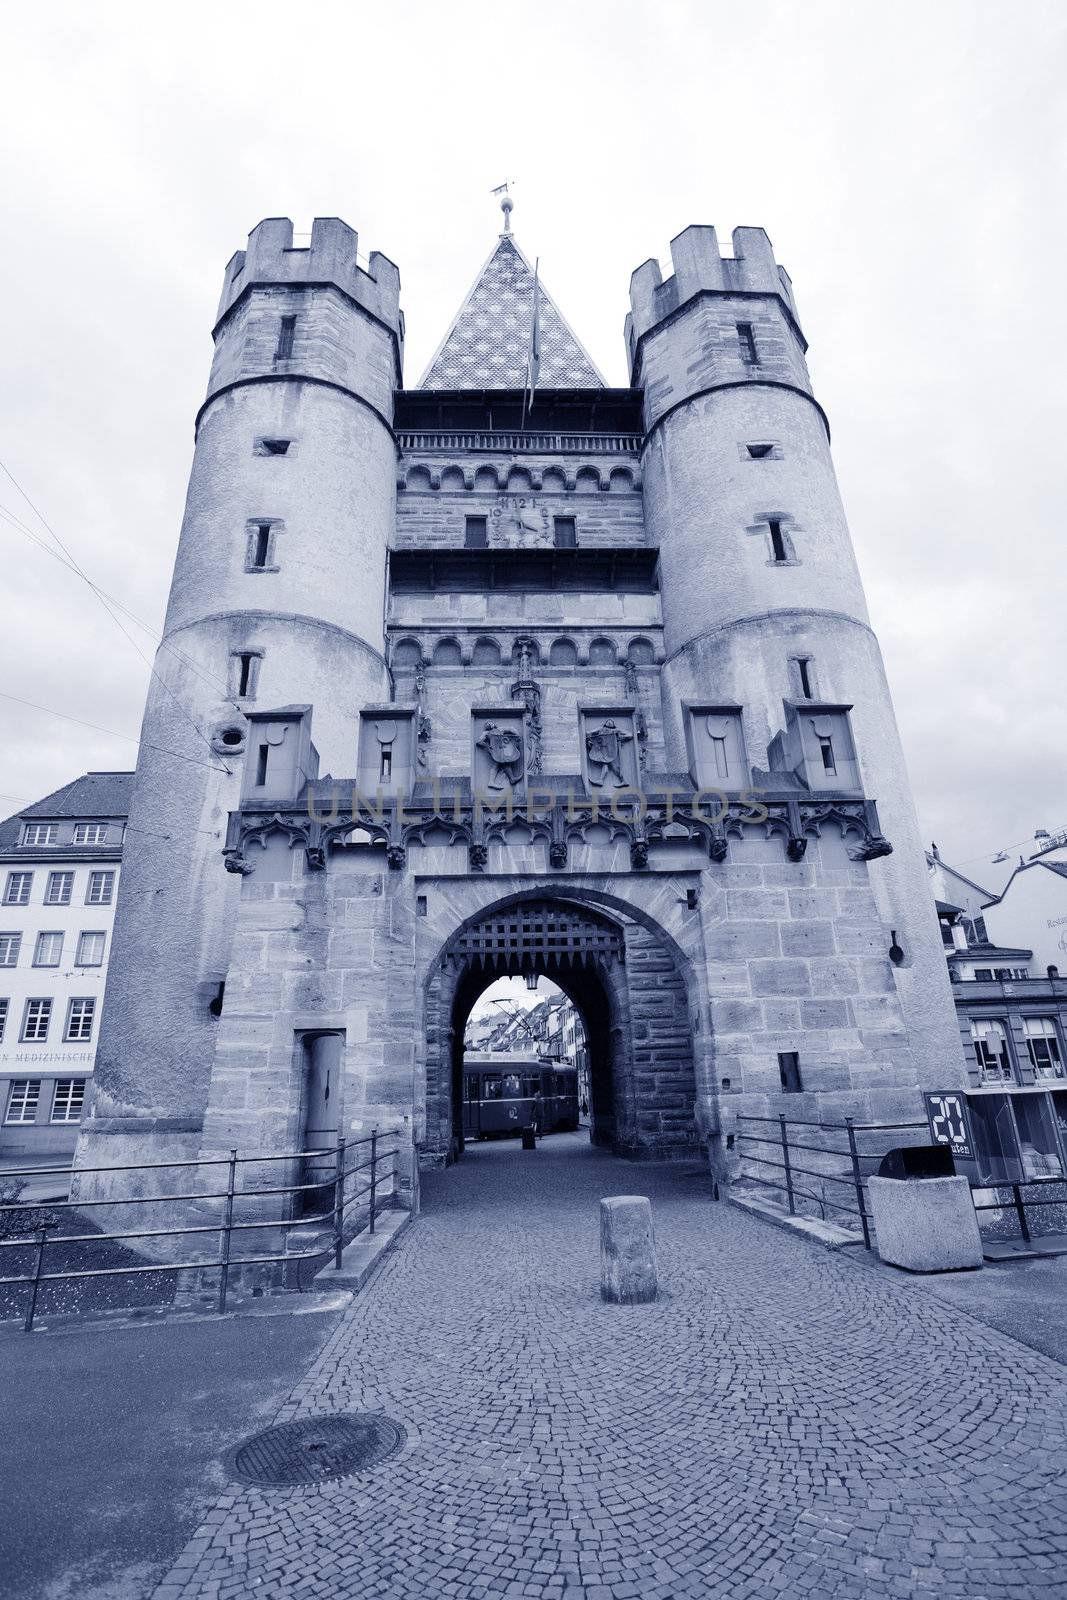 Spalentor Castle in the main streets of Basel, Switzerland by dacasdo